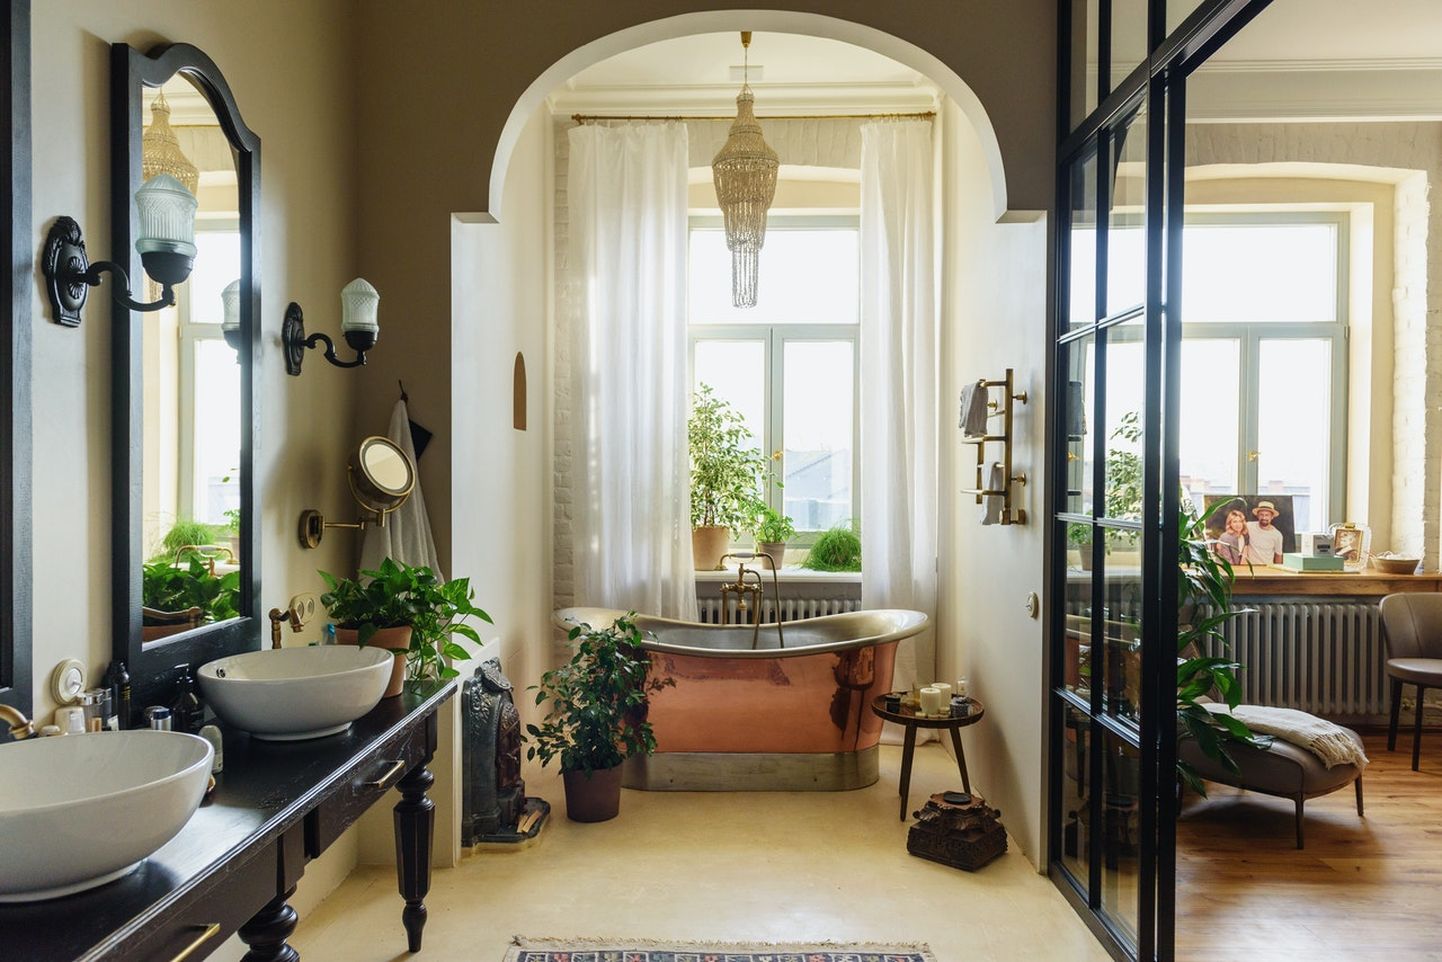 Kas sinu ideaalne vannituba on luksuslik, klassikaline või hoopis retrohõnguline?